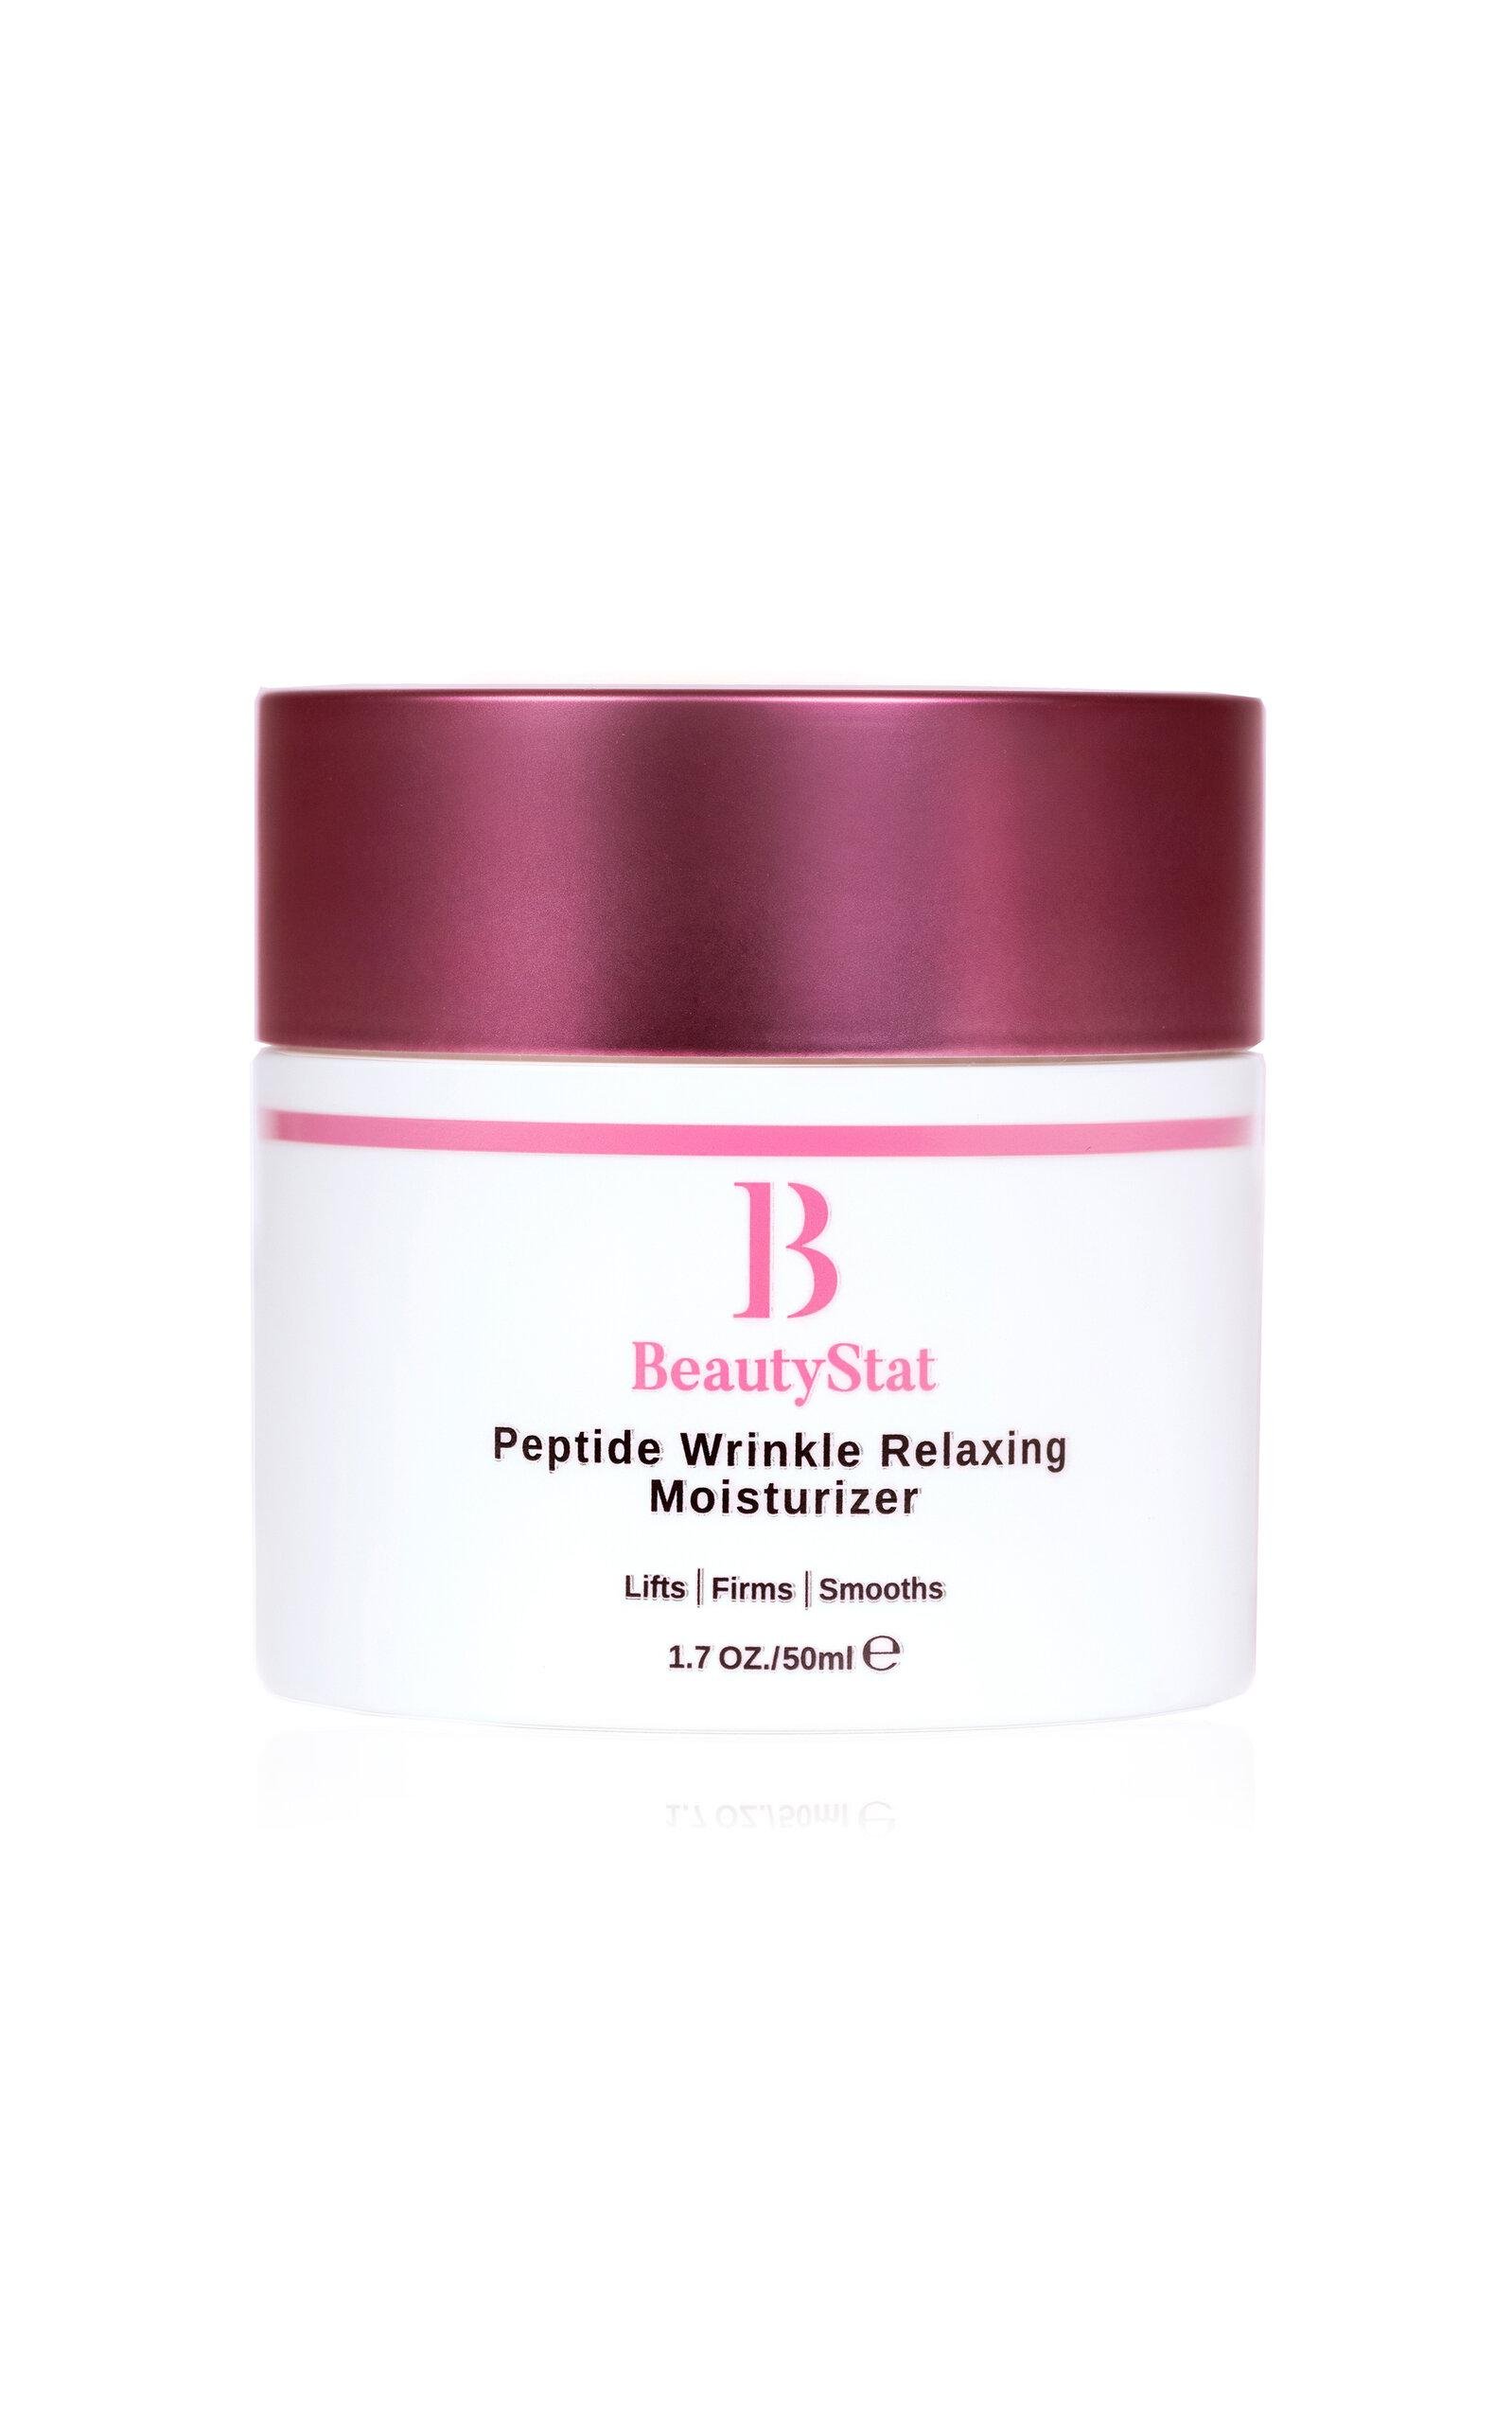 BeautyStat Peptide Wrinkle Relaxing Moisturizer - Moda Operandi by BEAUTYSTAT